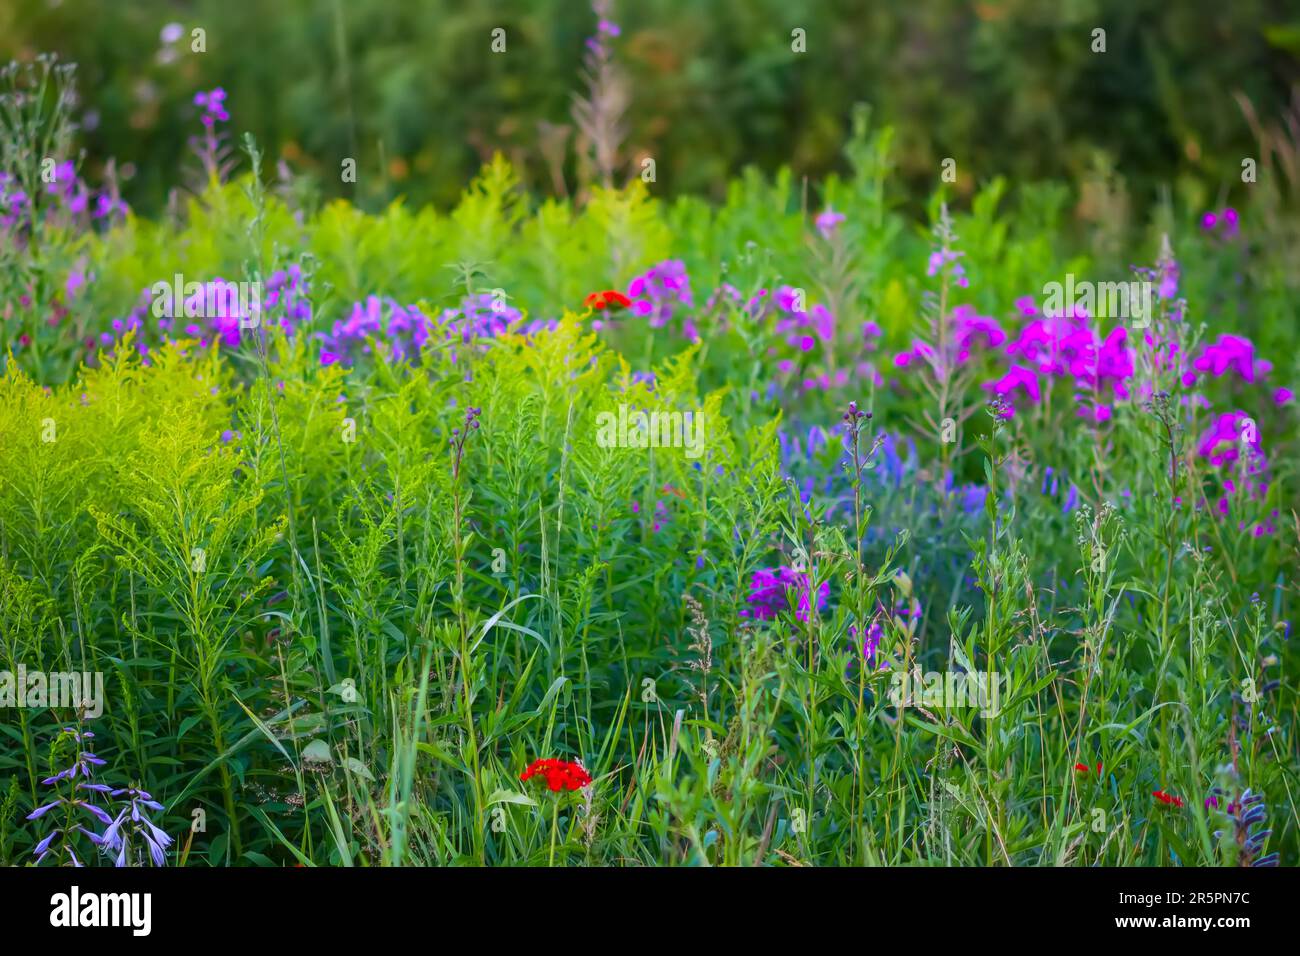 Garden Phlox paniculata summer flowers Stock Photo